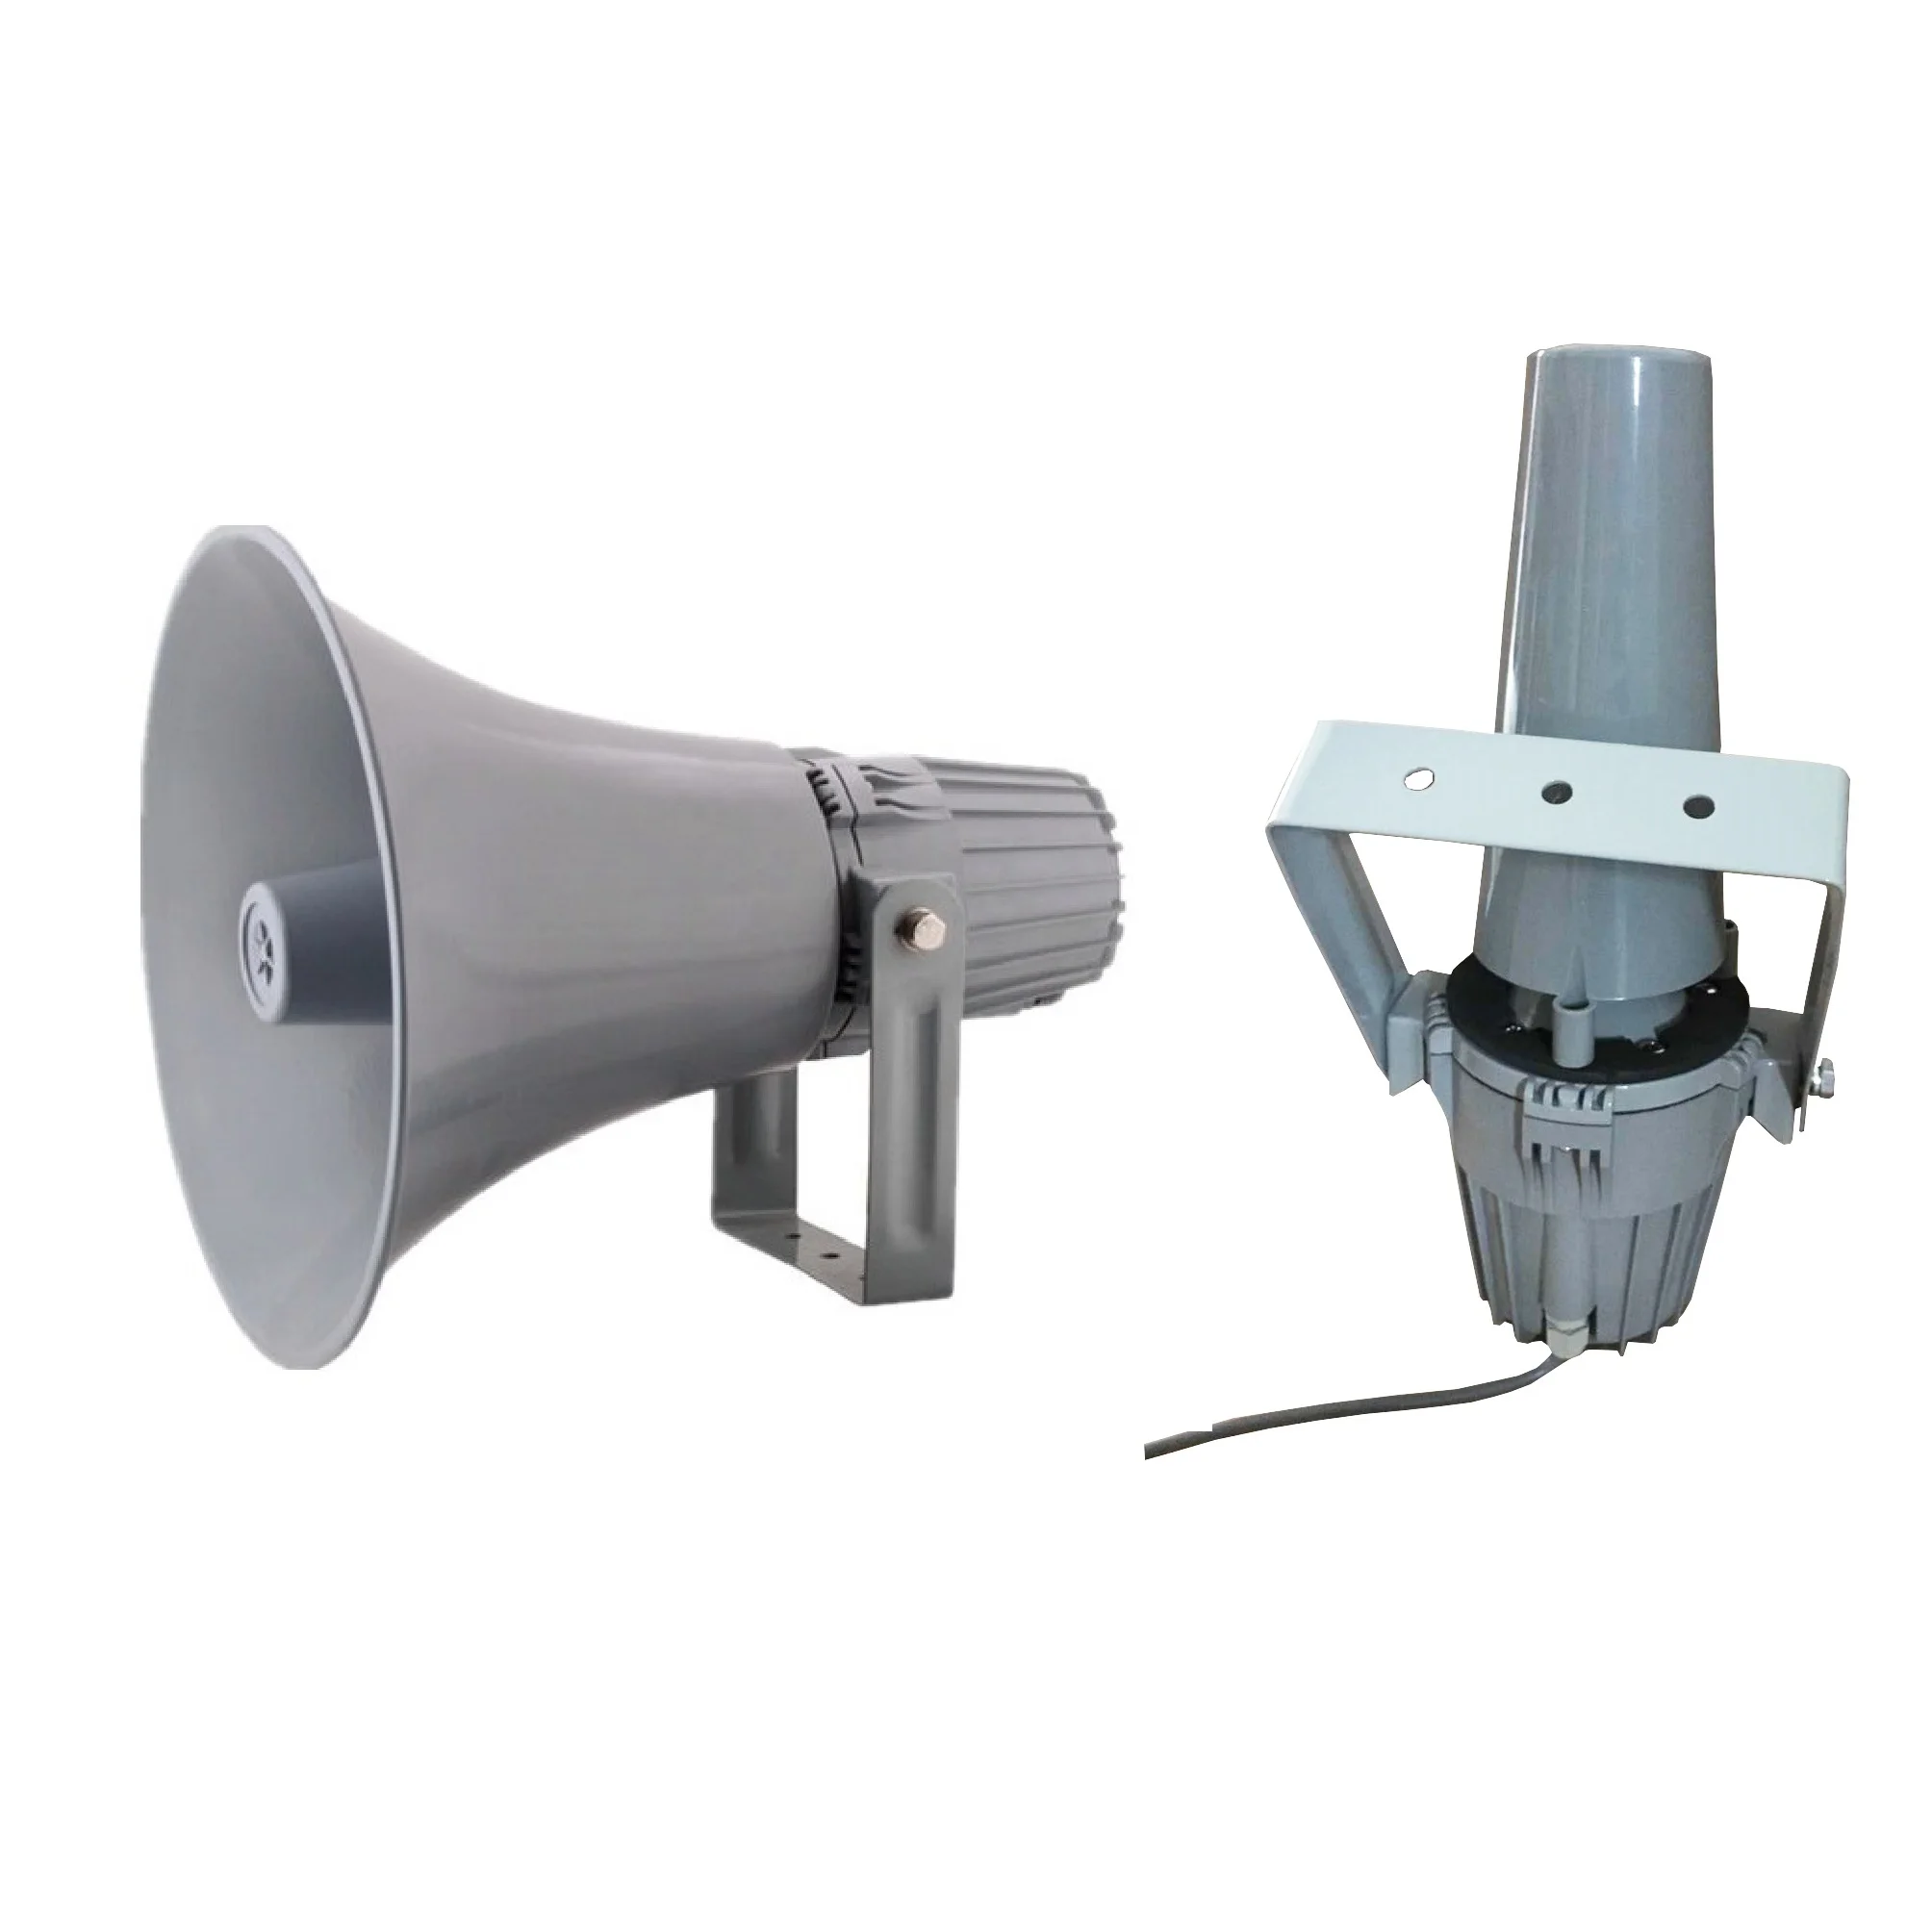 100w horn speaker